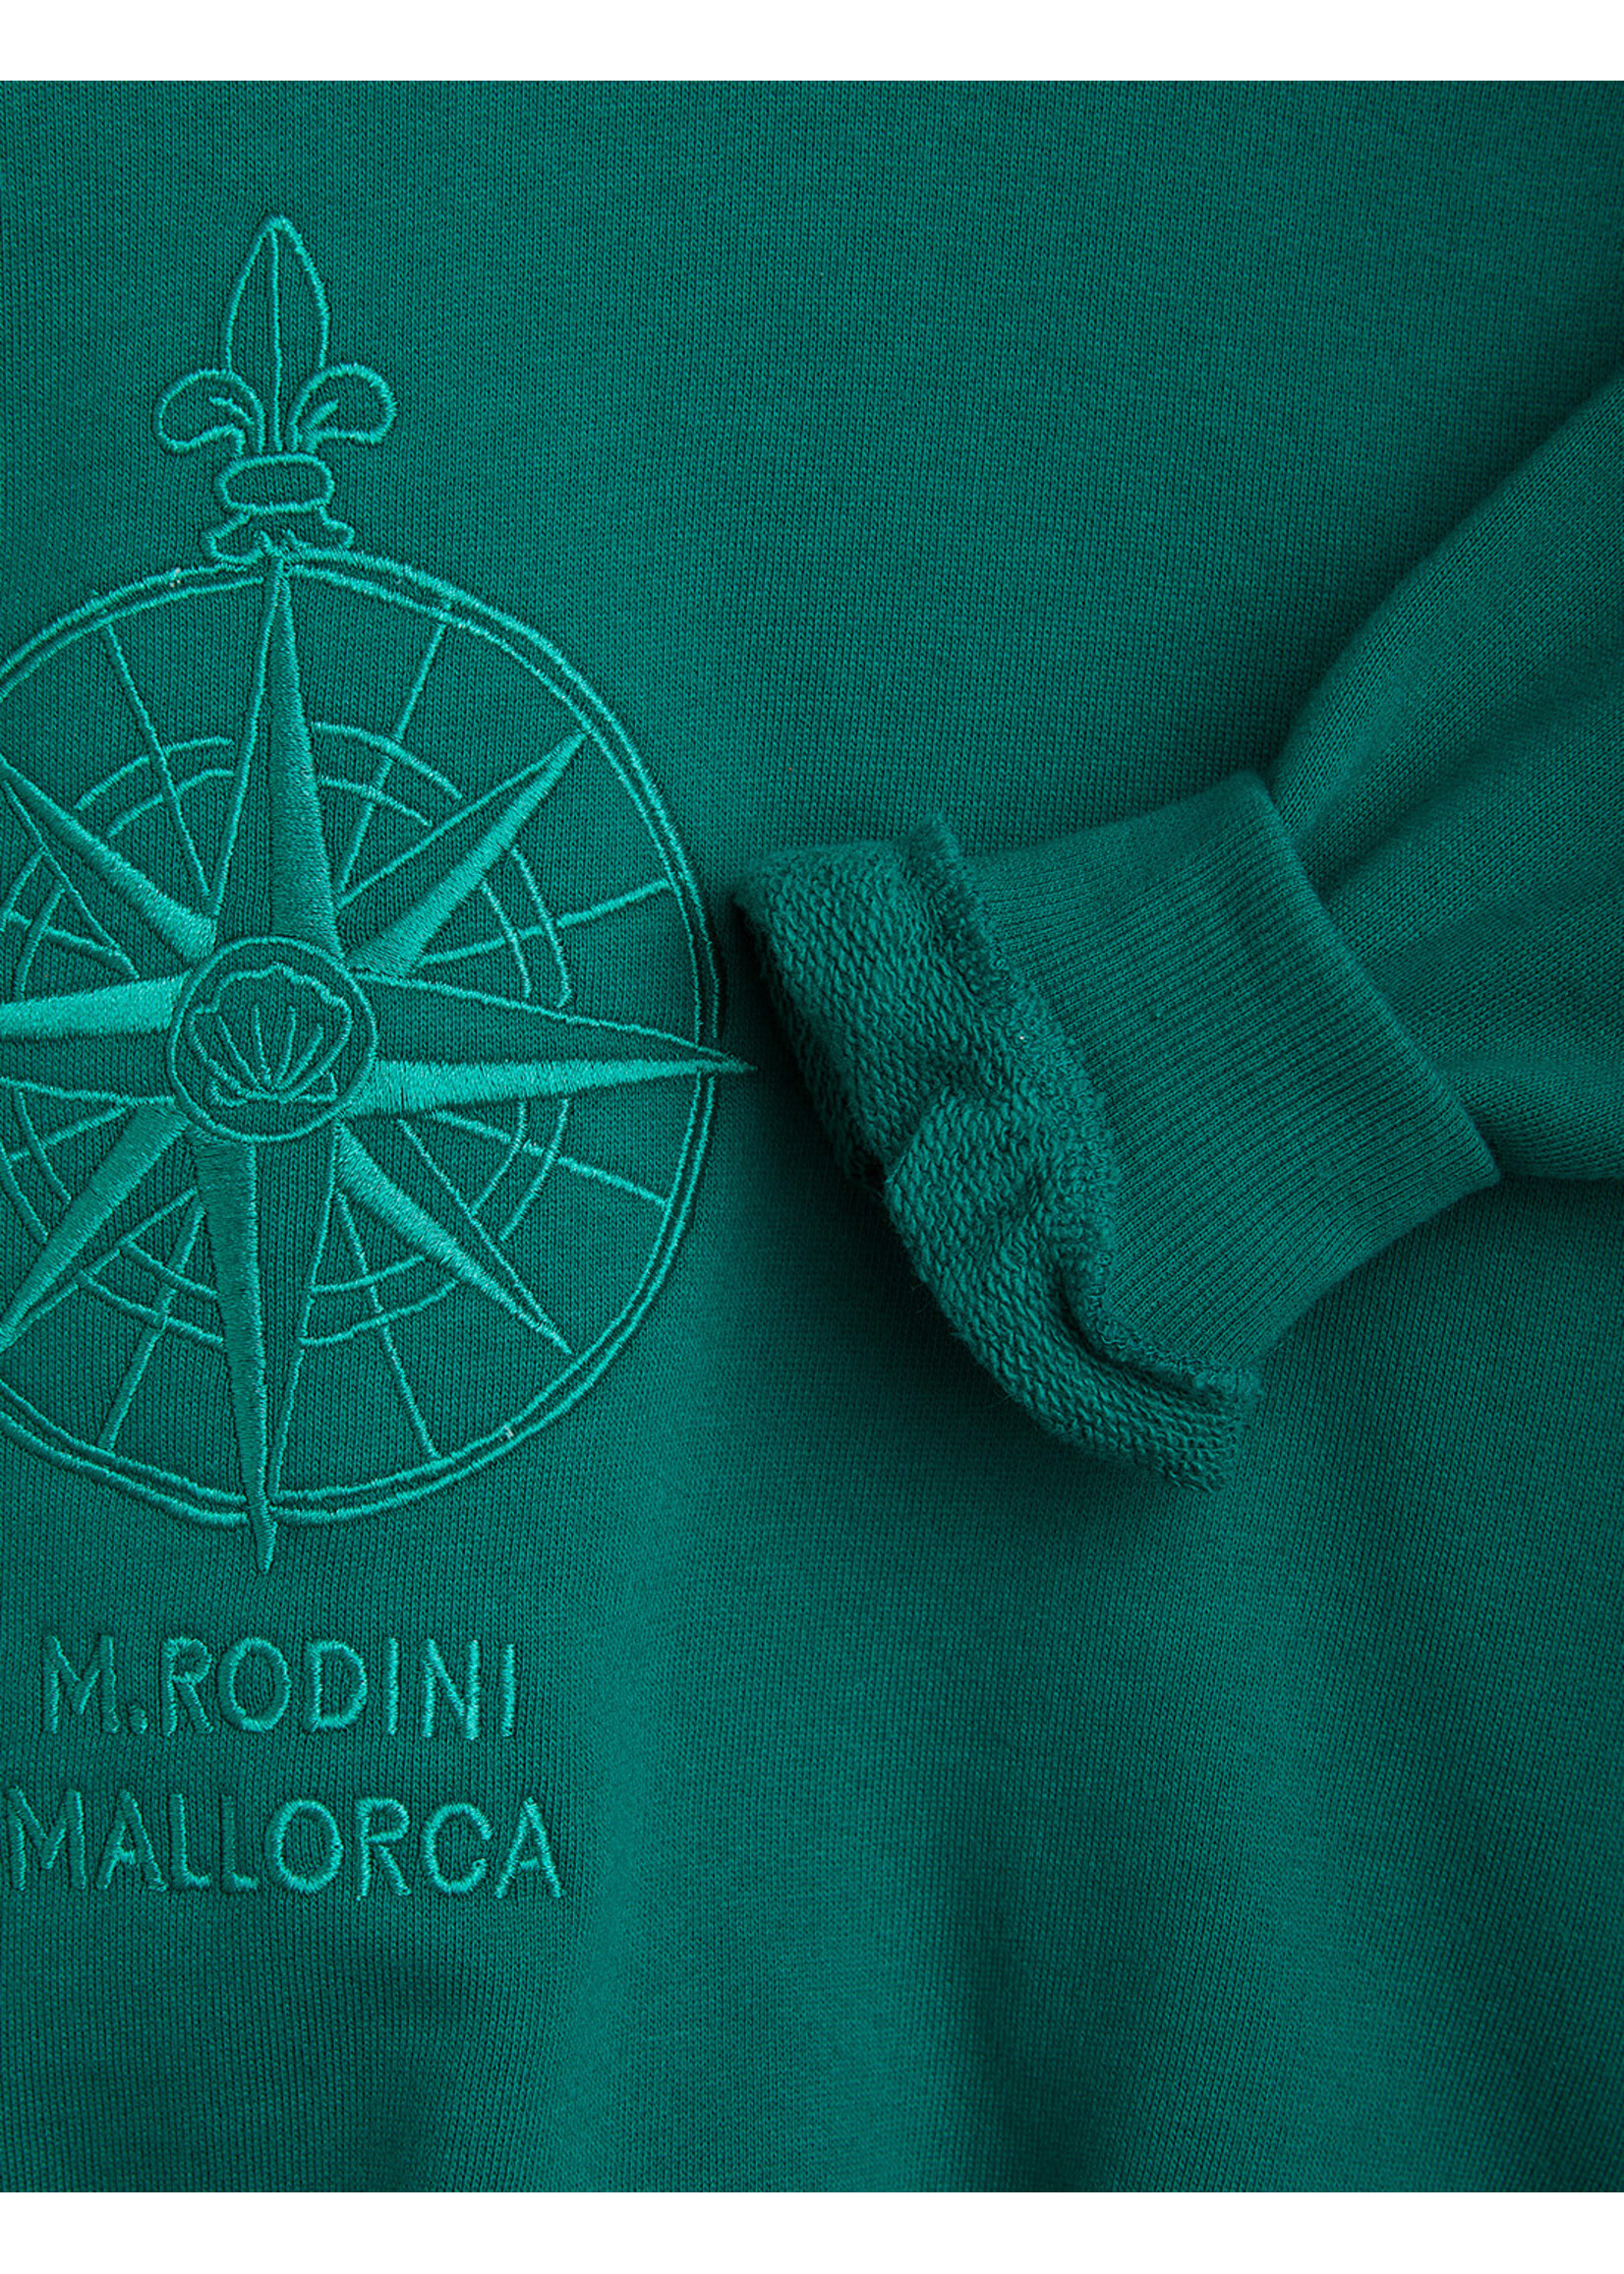 MINI RODINI Mini Rodini - Compass emb sweatshirt